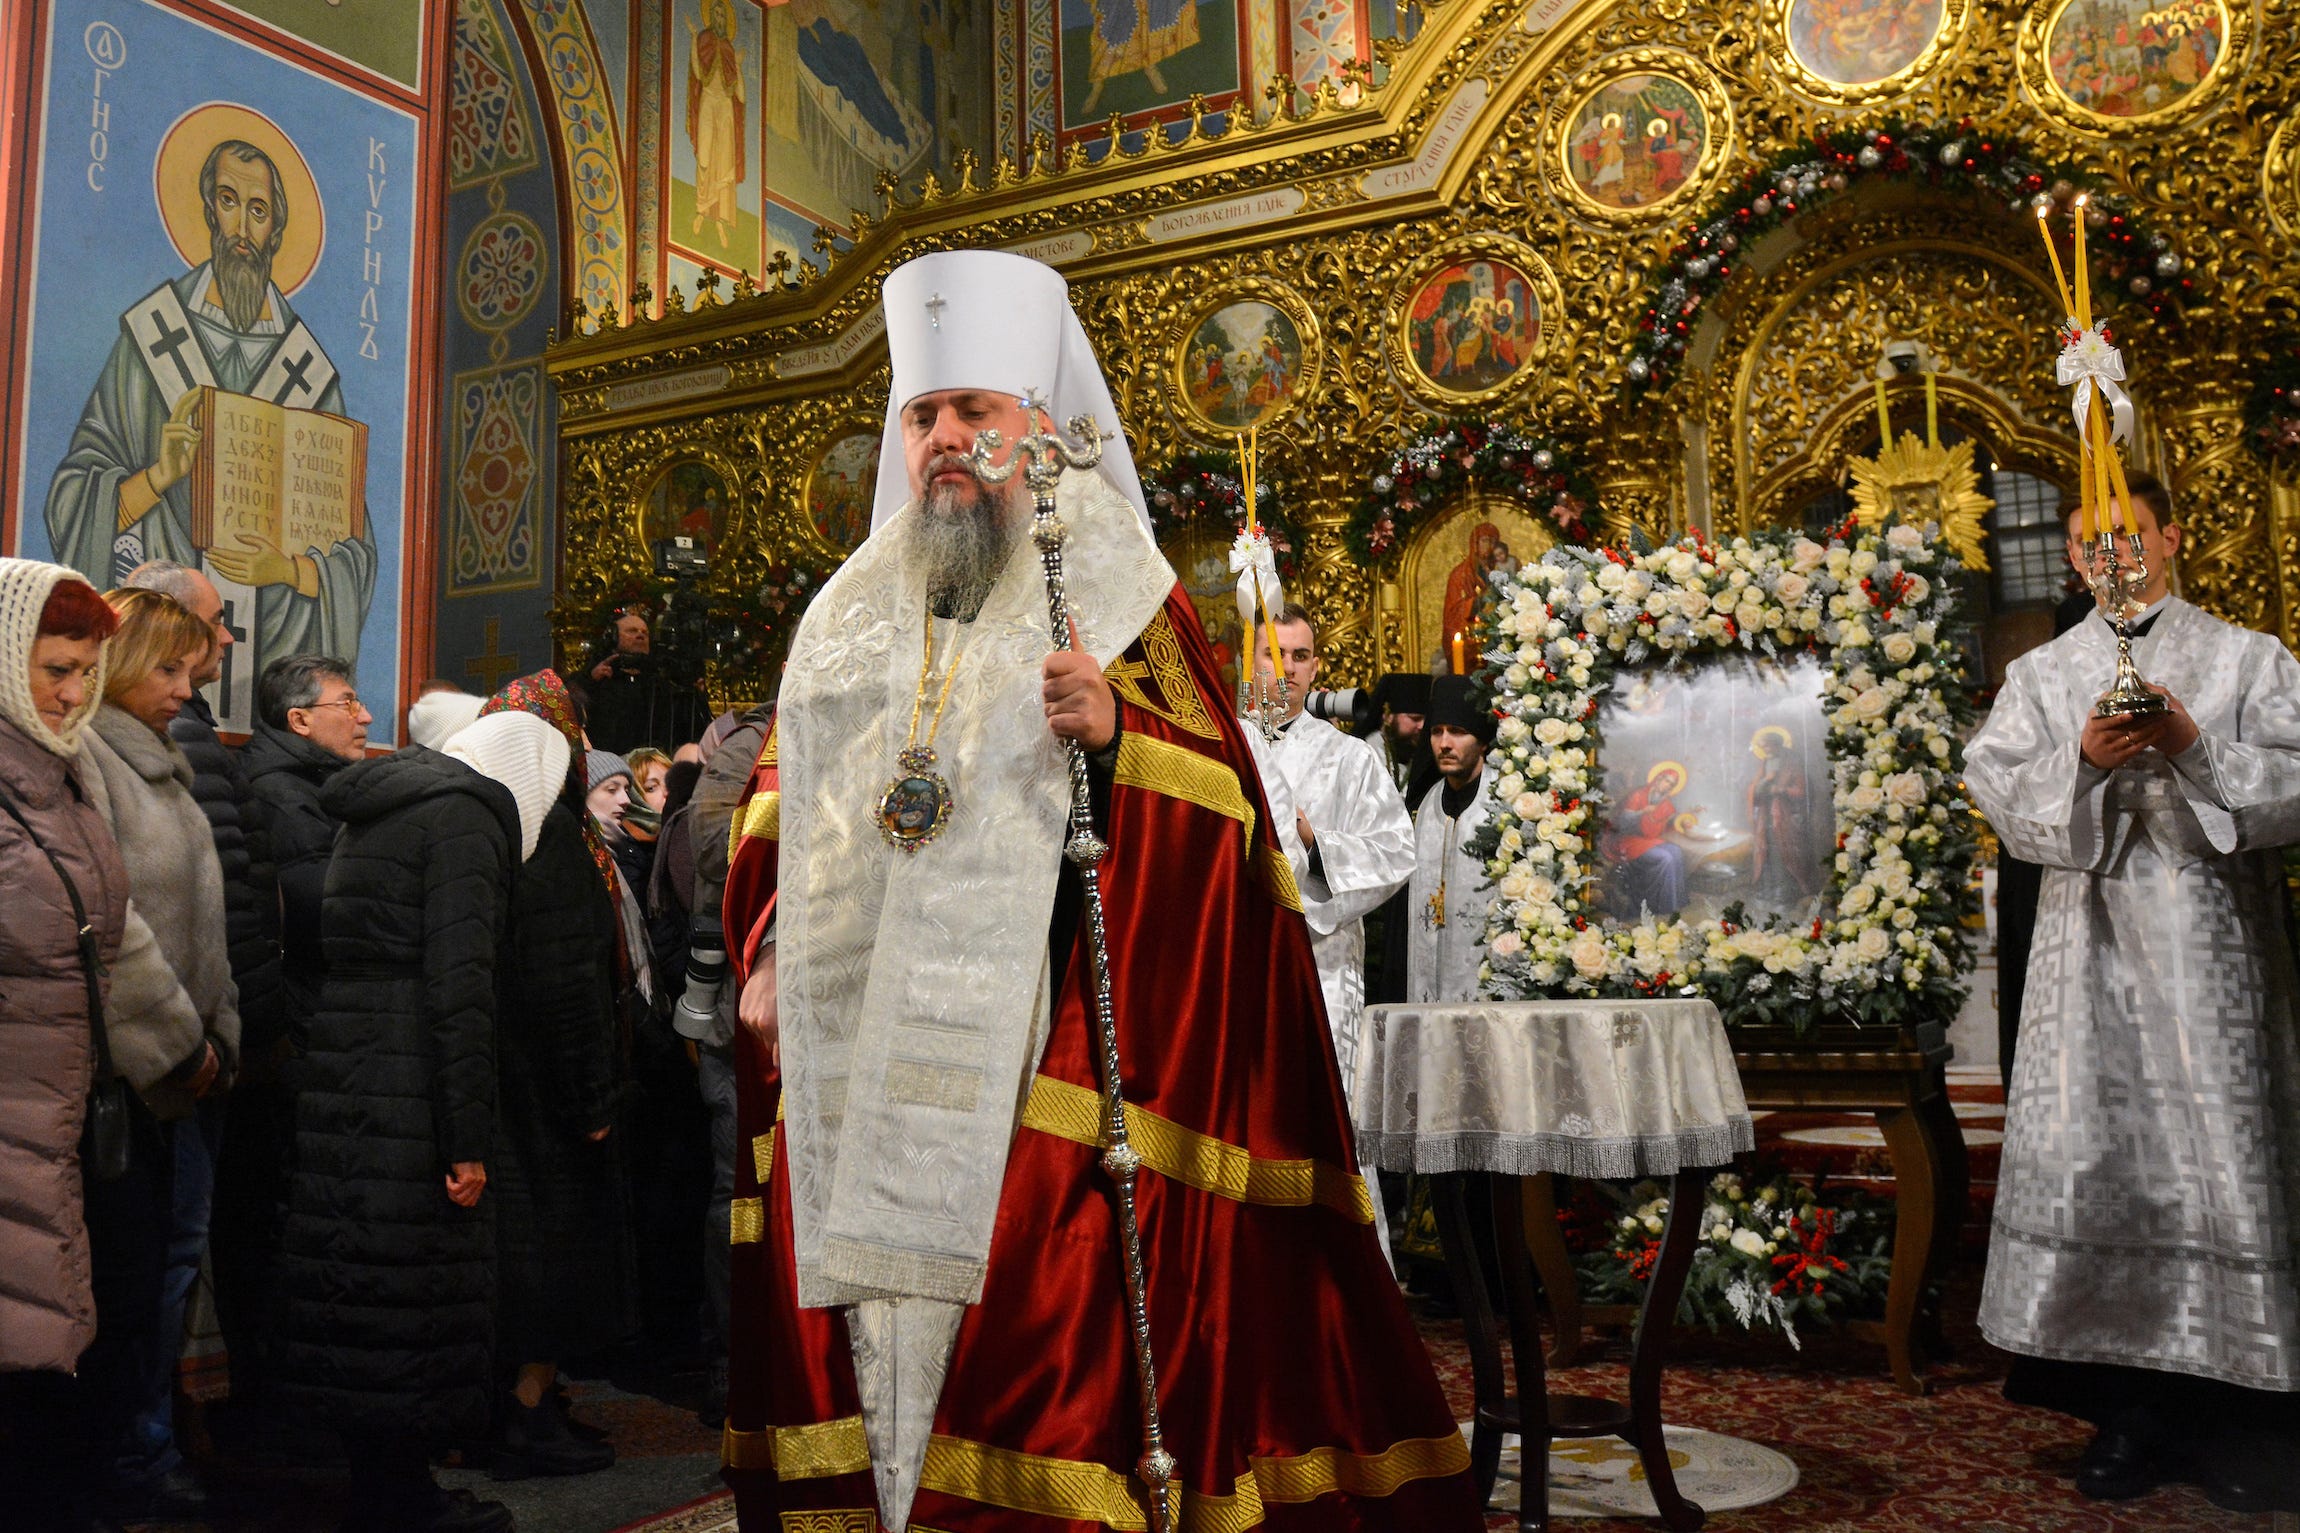 Ein orthodoxer Priester in zeremoniellen Gewändern aus Weiß, Rot und Gold hält ein Zepter und leitet einen Gottesdienst in einer goldgeschmückten Kirche in Kiew, Ukraine.